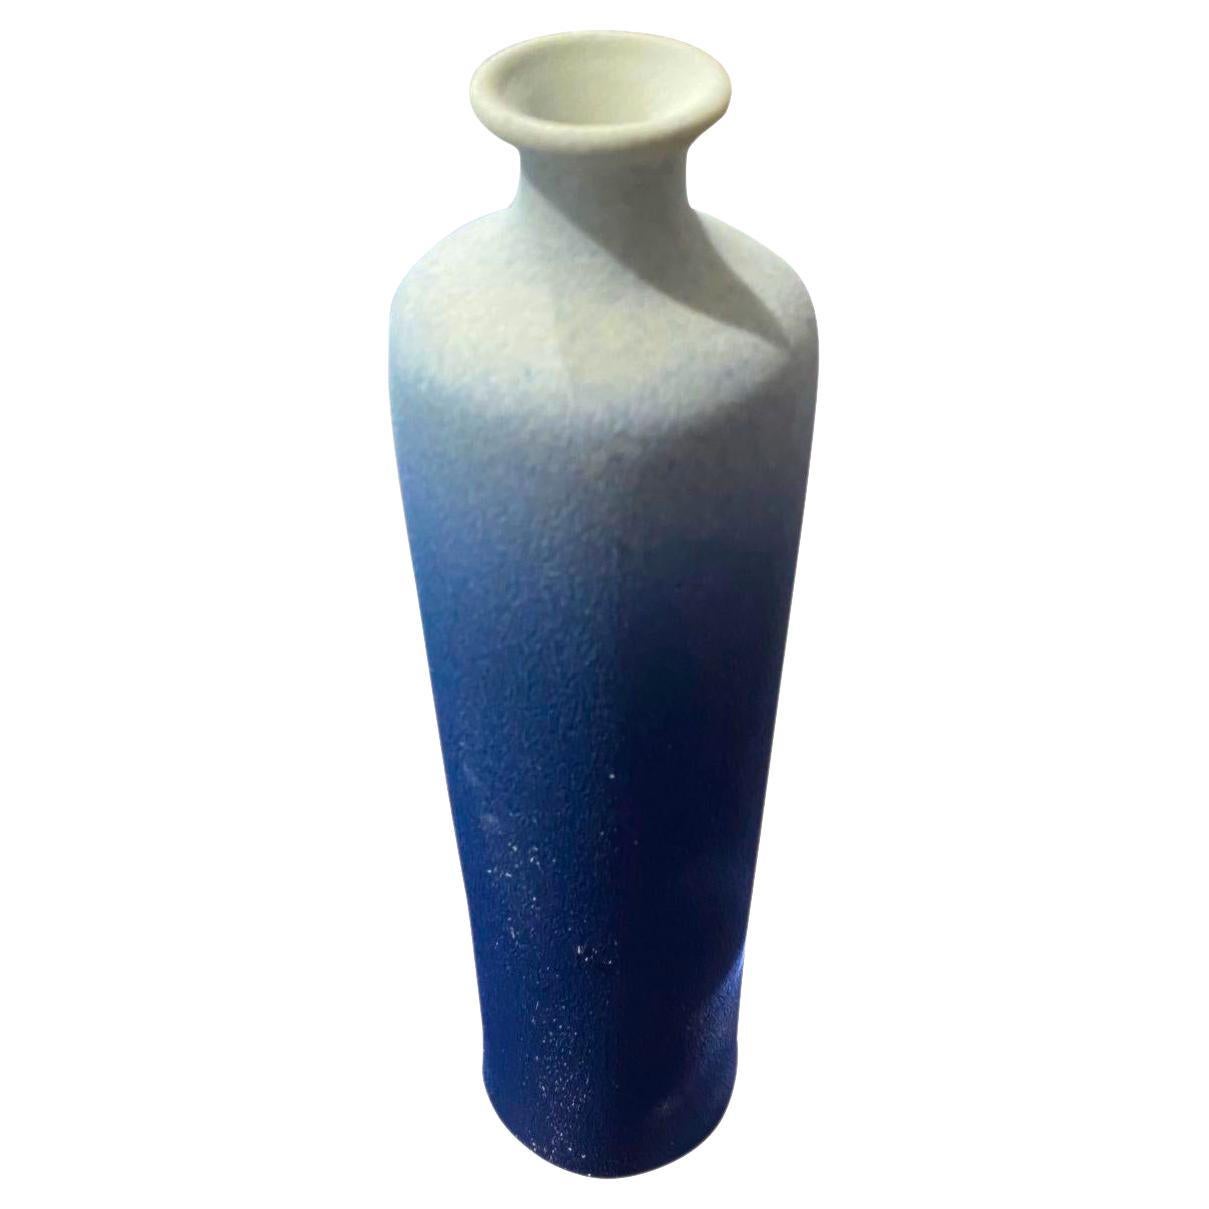 Zeitgenössische chinesische ombre blau glasierte Vase.
Große schlanke Ausgussöffnung.
Teil einer großen Sammlung.